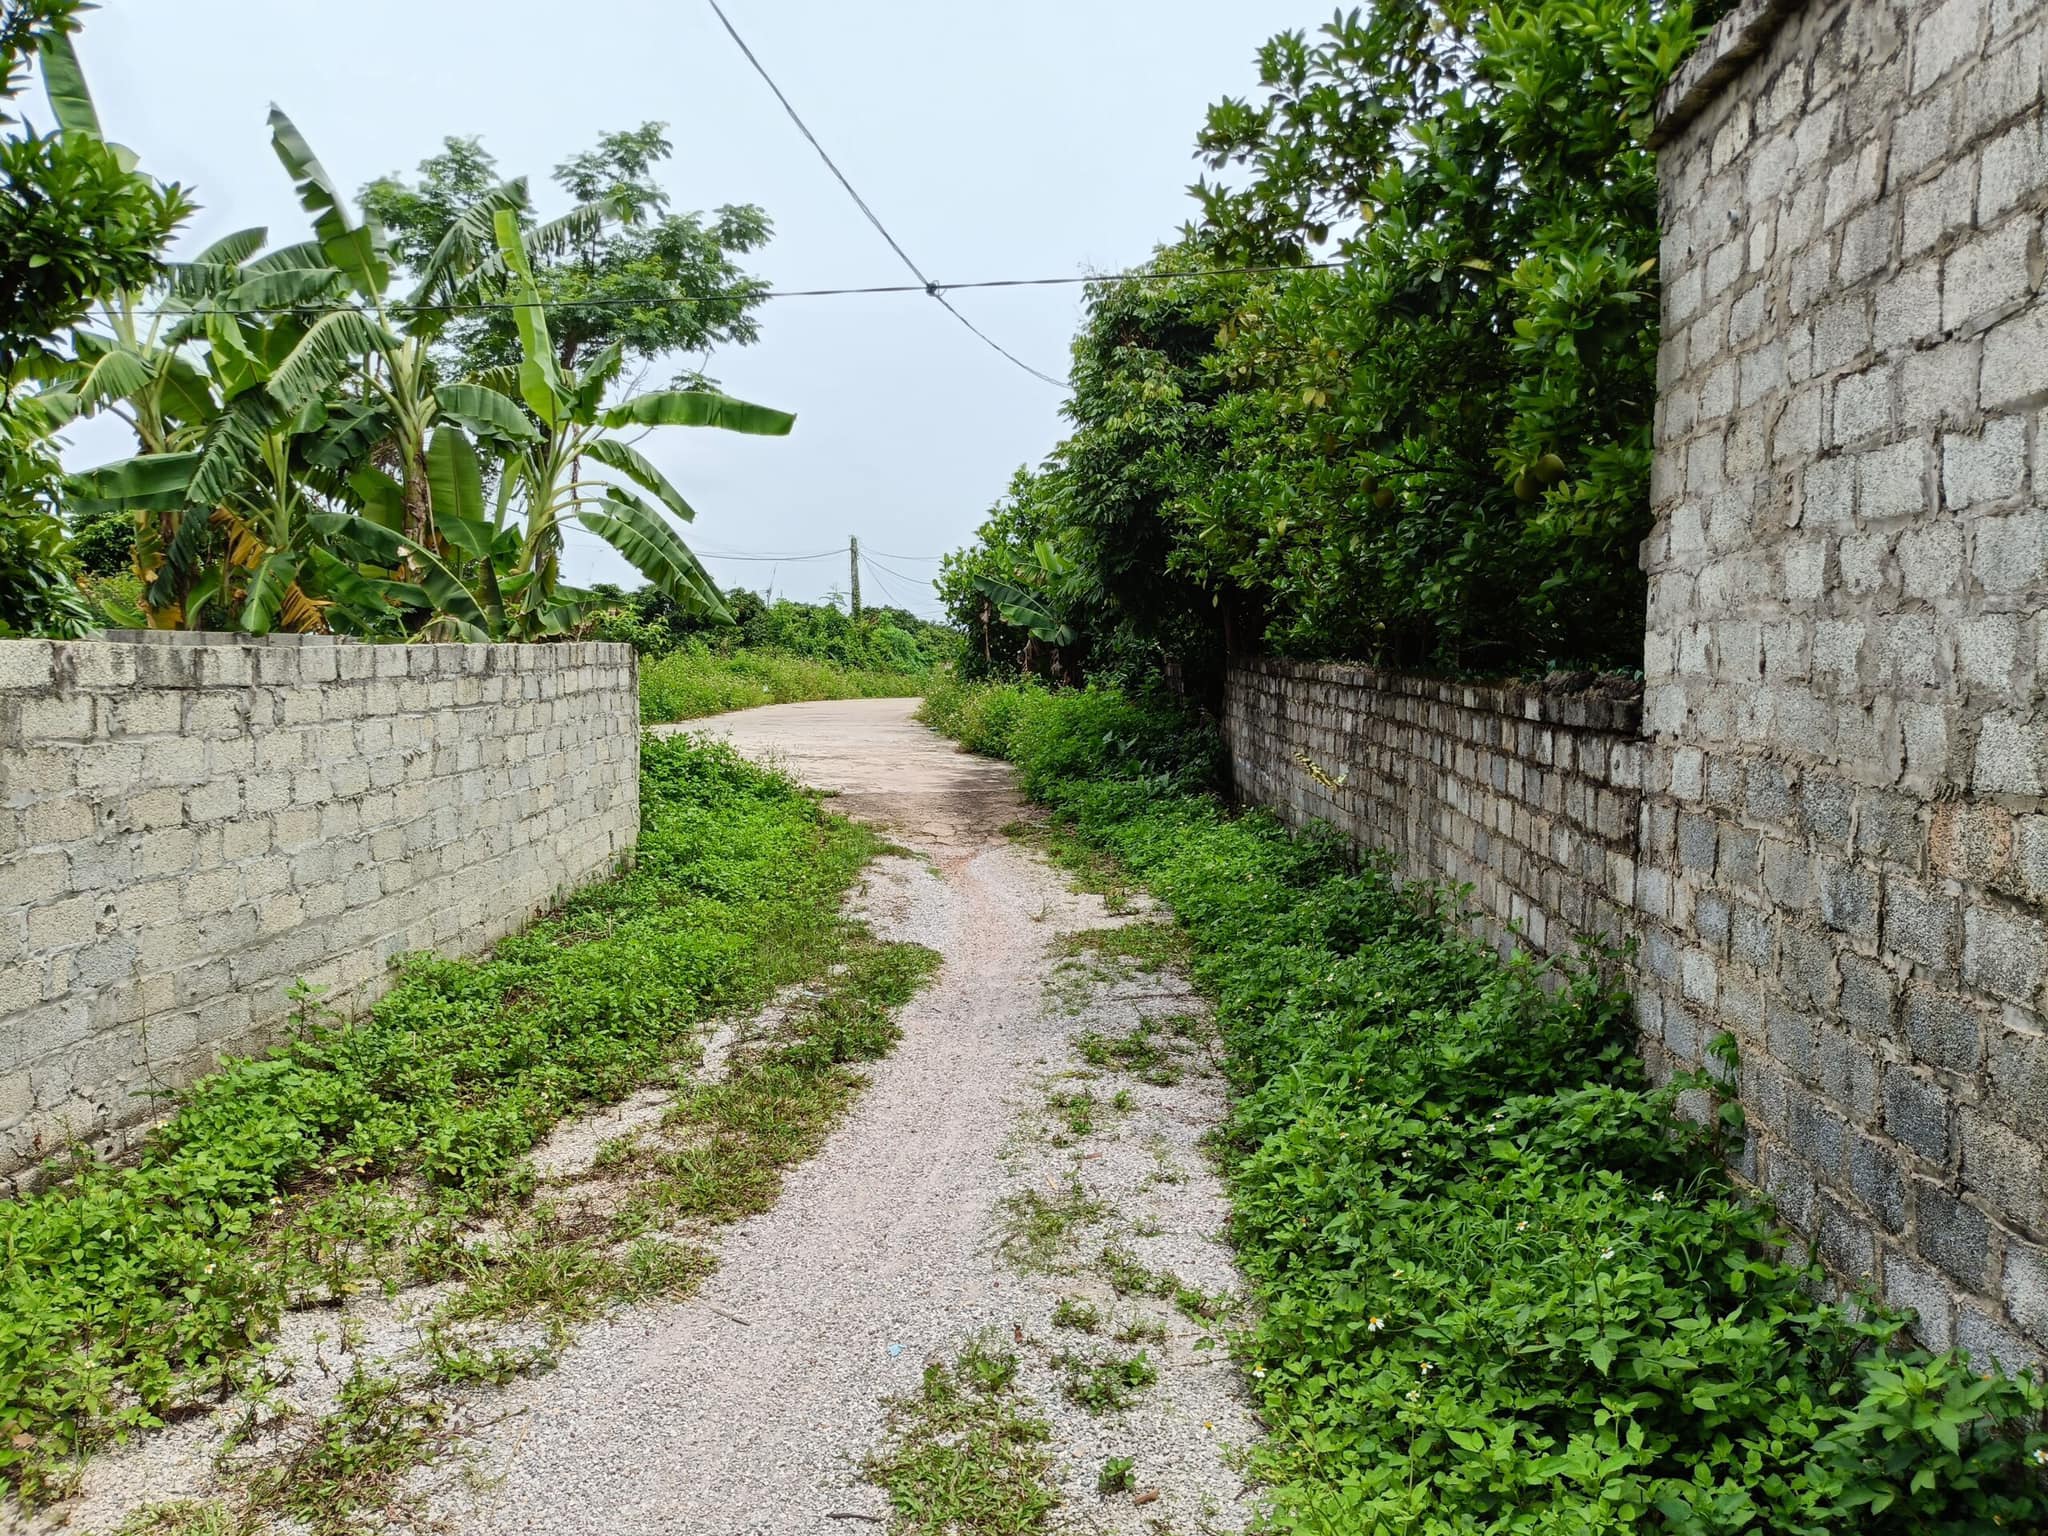 Bán đất huyện Lục Ngạn tỉnh Bắc Giang xung quanh xây toàn bộ tường bao, đường xe tải